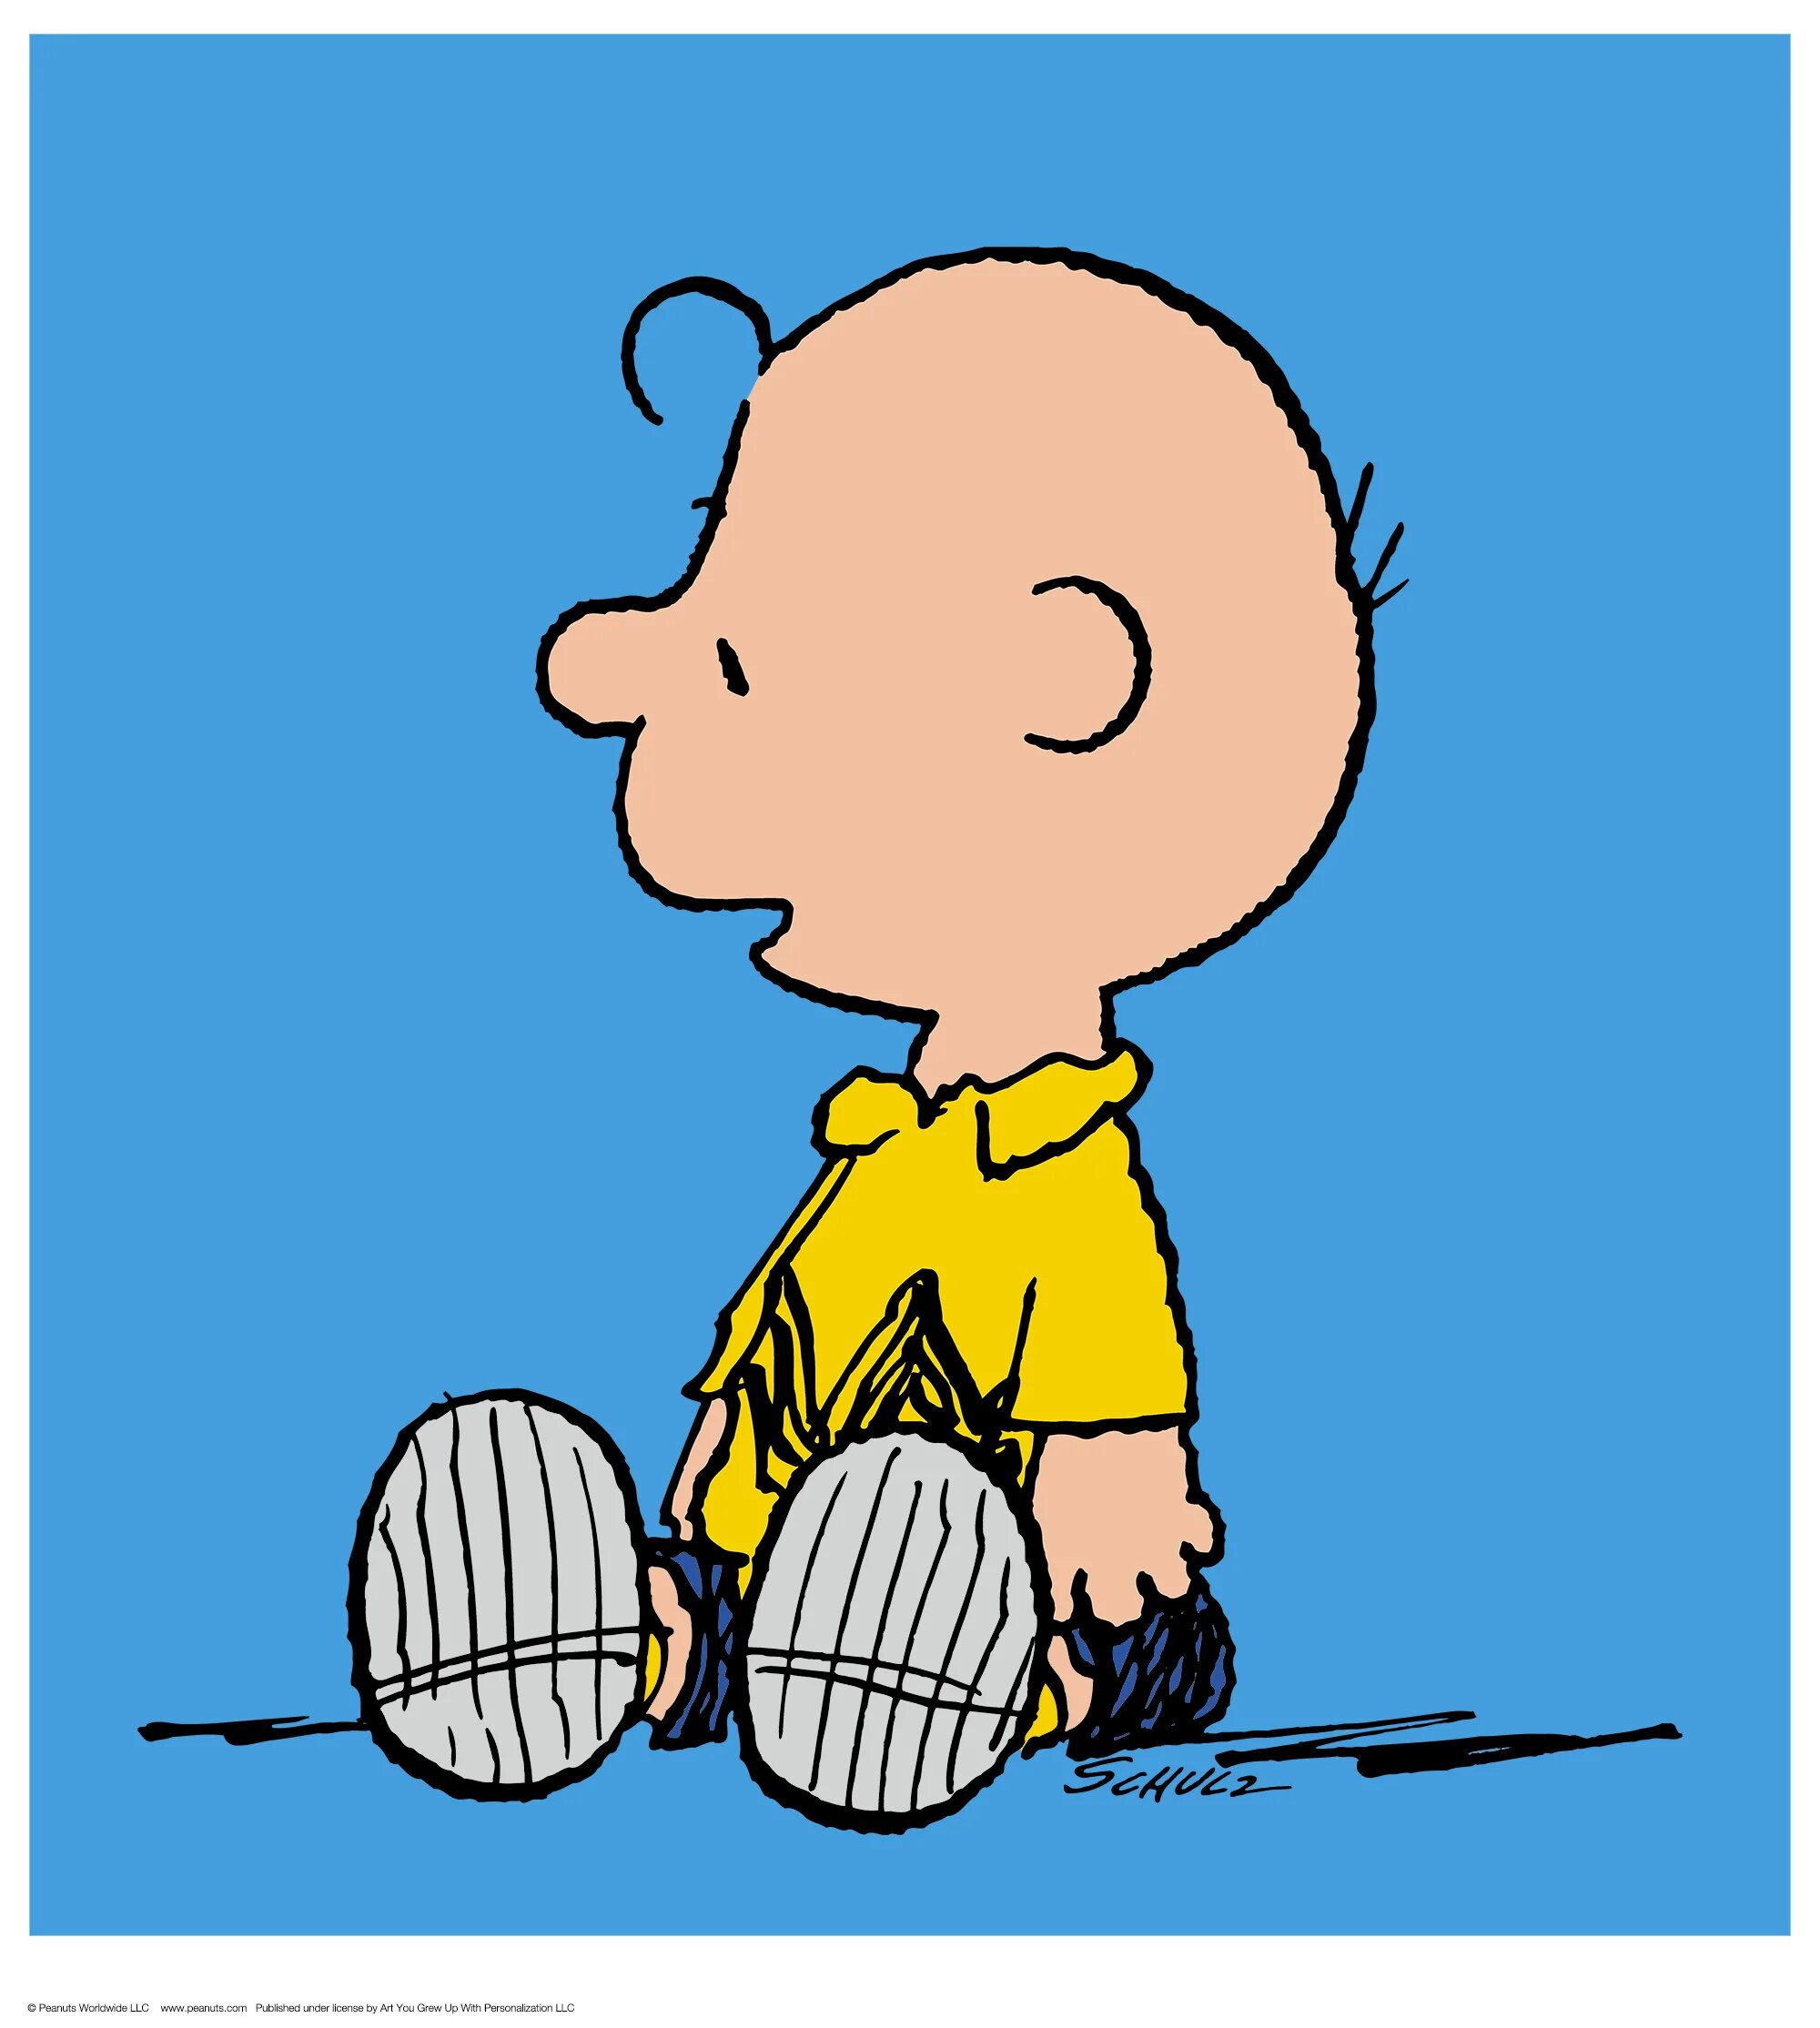 Charlie brown. Чарли Браун. Peanuts Charlie Brown. Чарли Браун Peanuts персонаж.